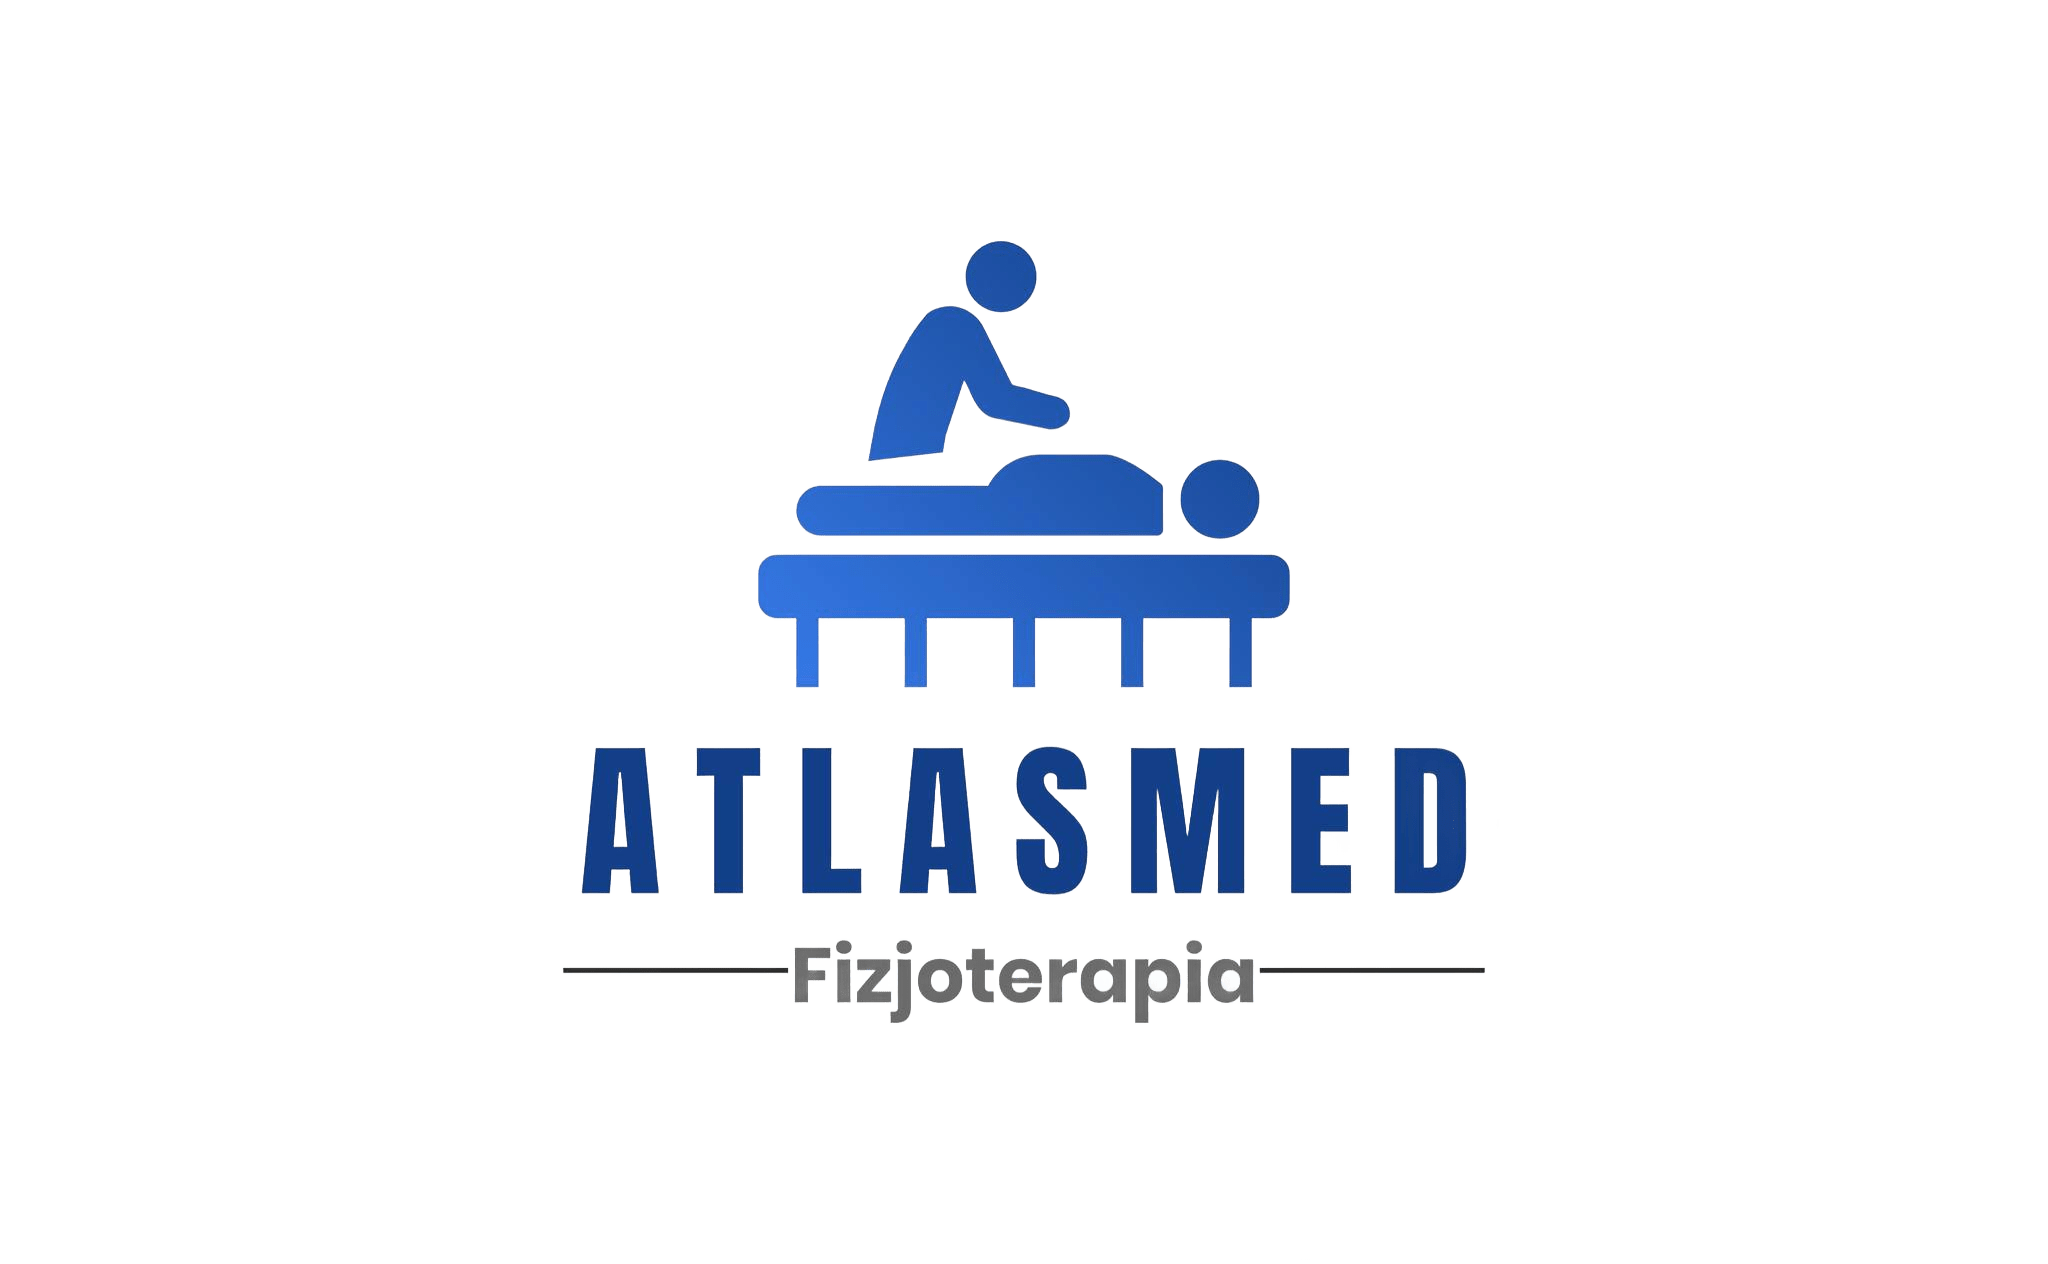 AtlasMed